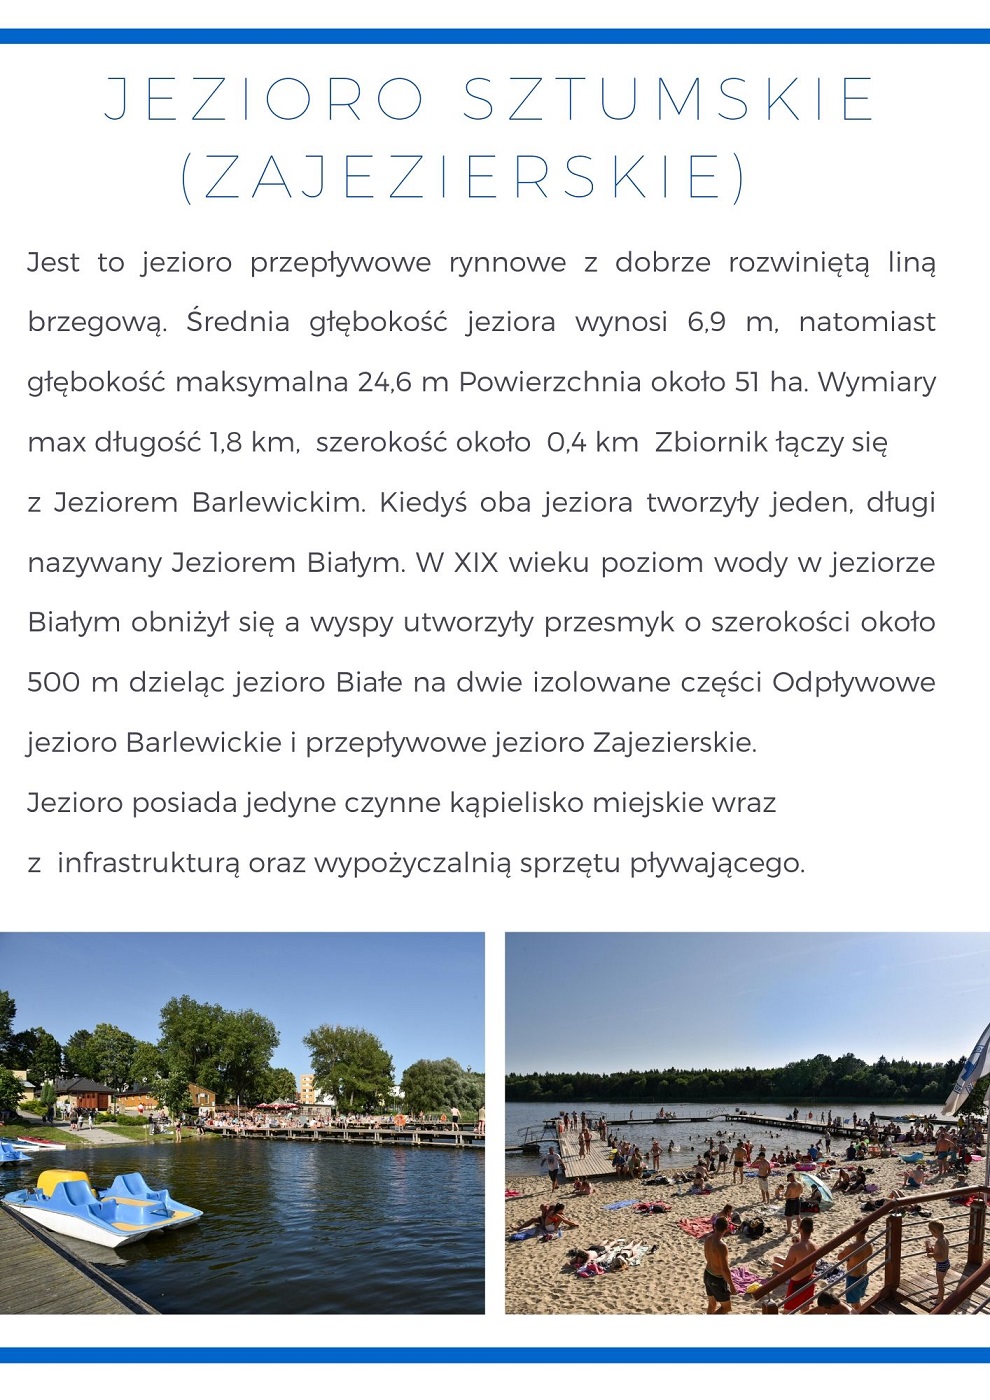 Grafika informująca o Ciekawych Miejscach - Jezioro Sztumskie